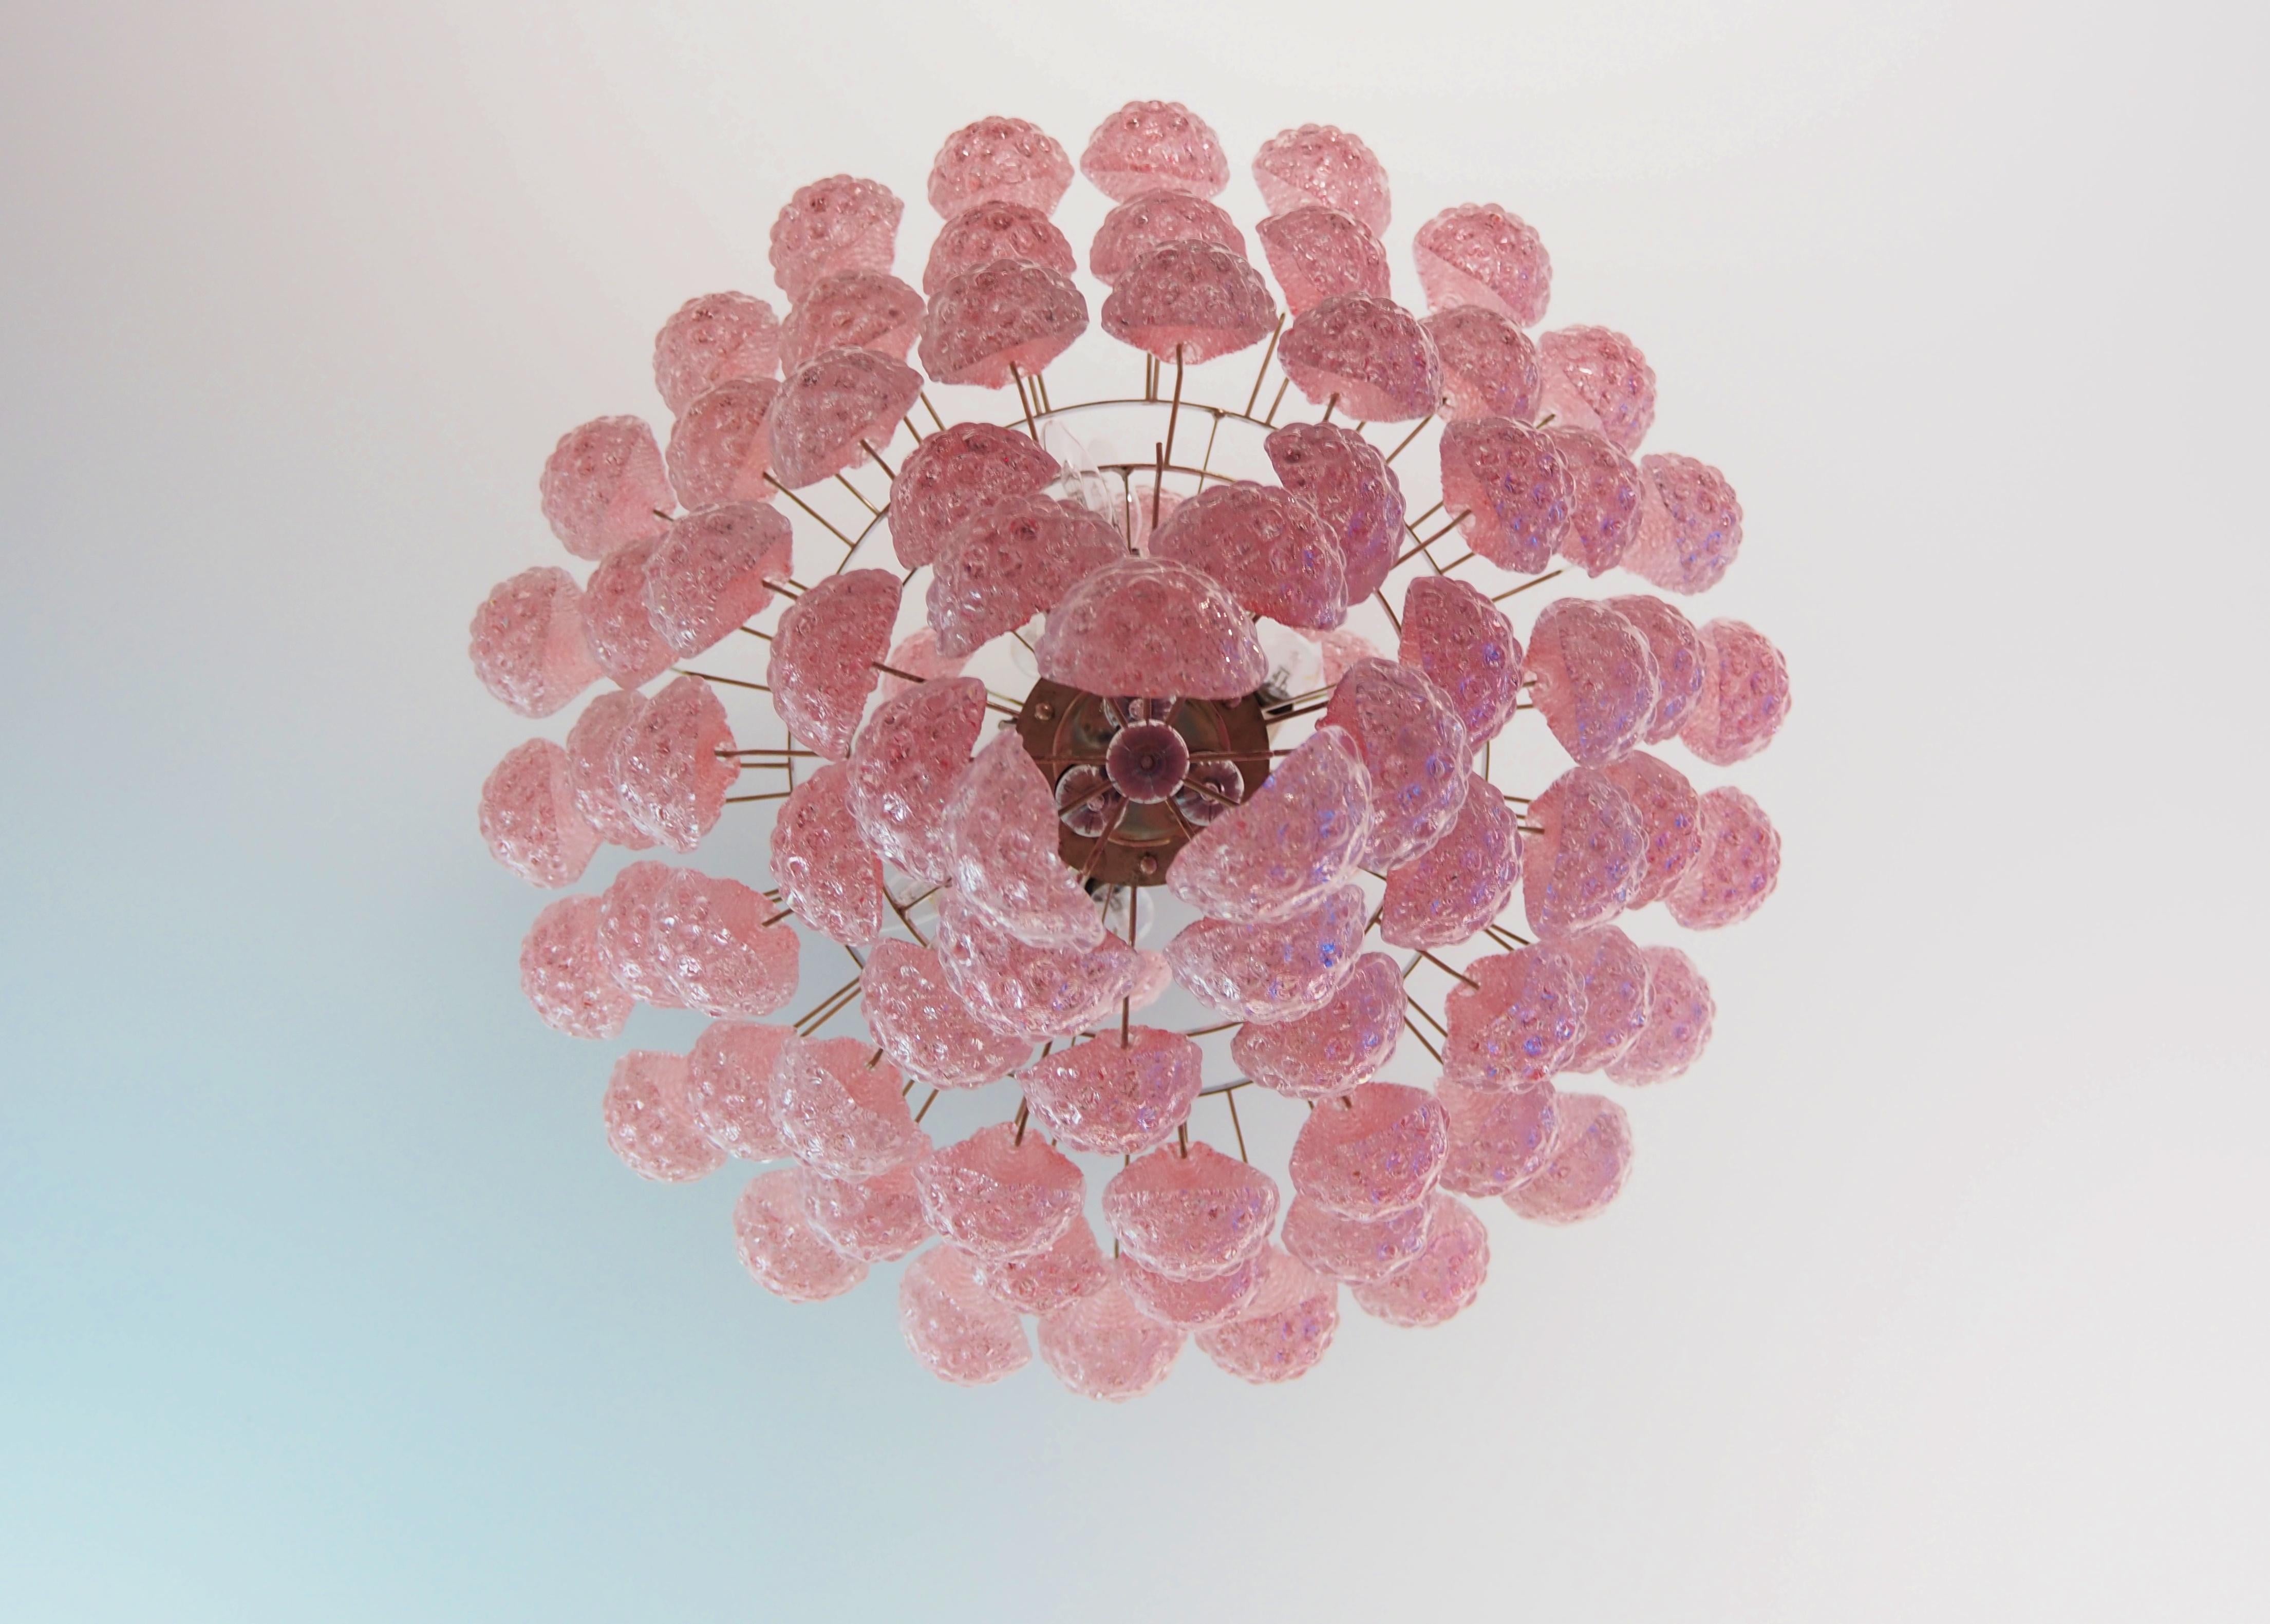 Huge Italian vintage Murano glass chandelier - 85 glass PINK petals drop For Sale 9